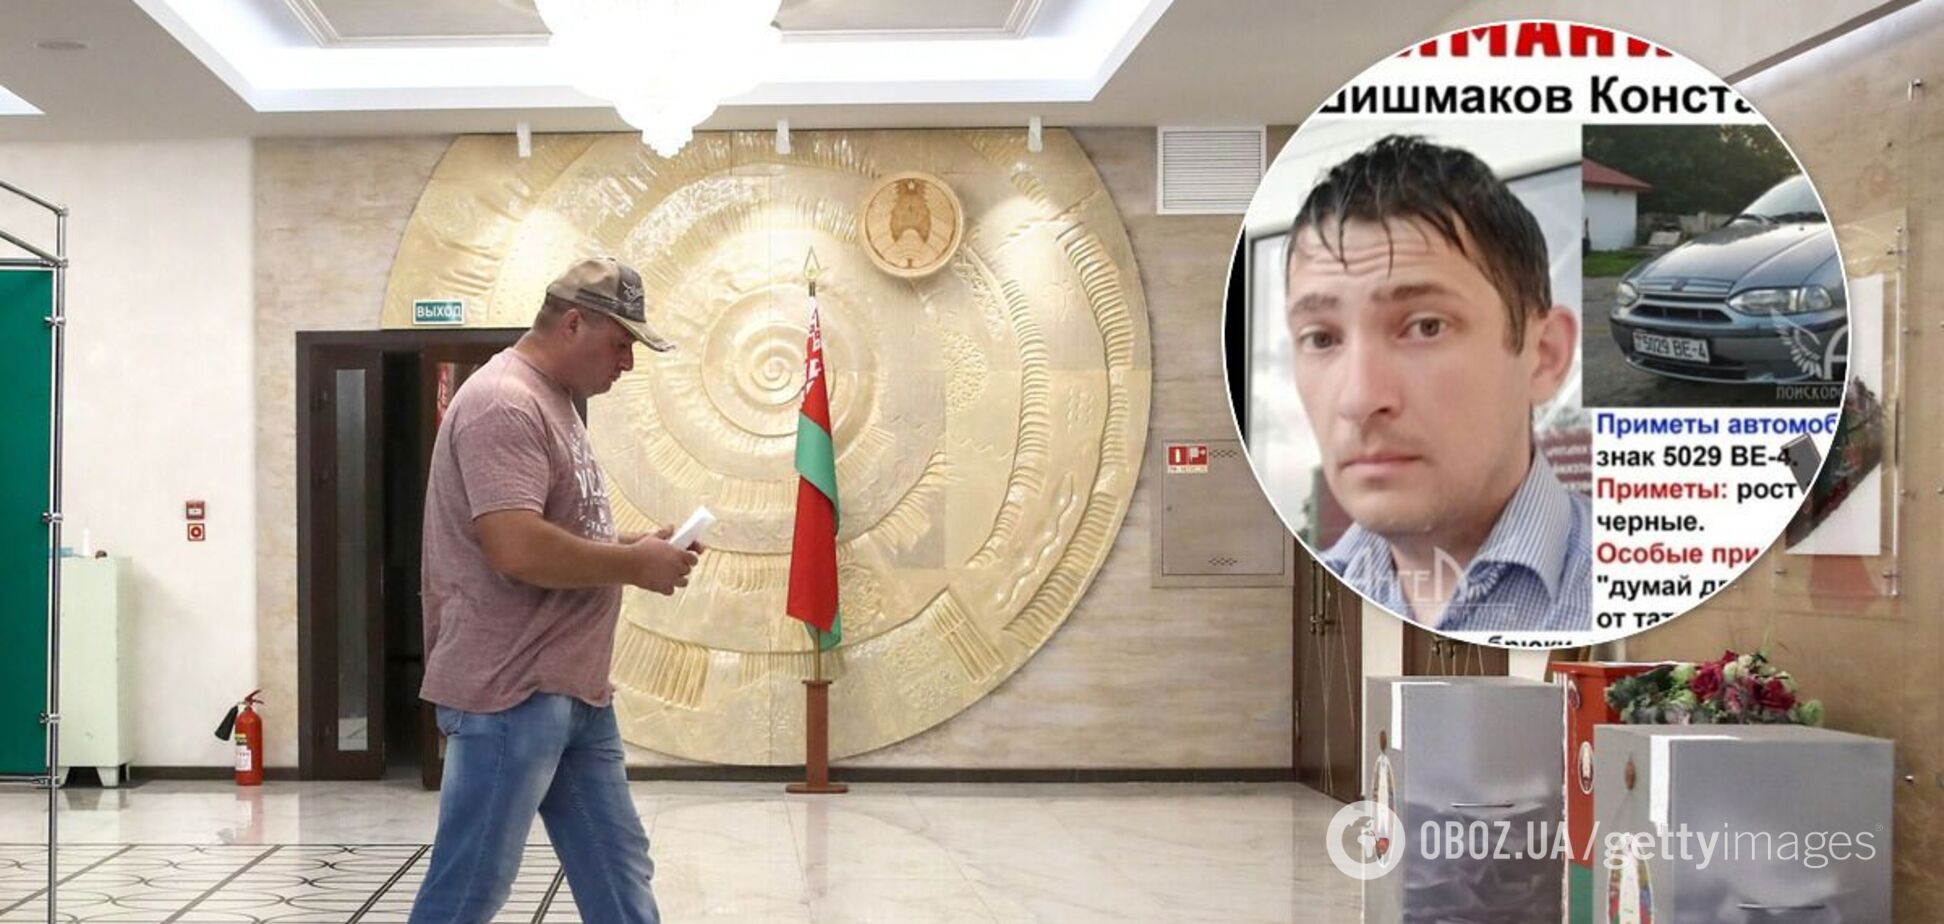 У Білорусі знайшли мертвим члена виборчкому, який зник після відмови підписати протокол